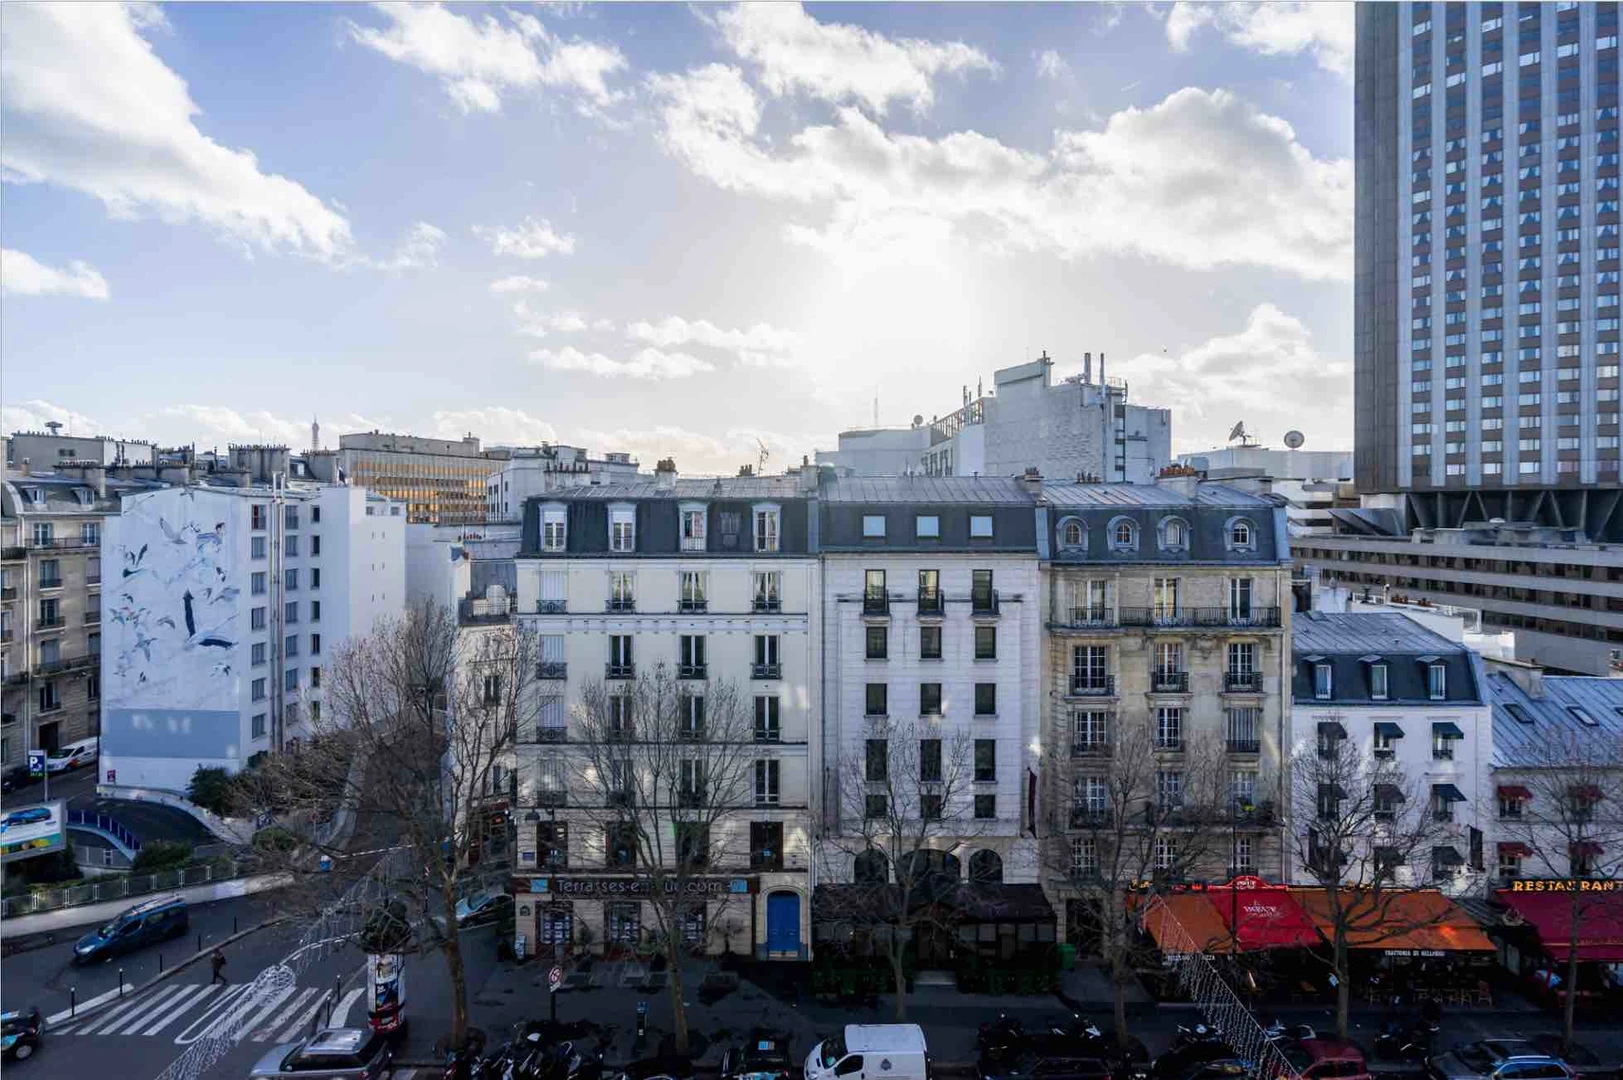 Stylowe mieszkanie typu studio w Paryż